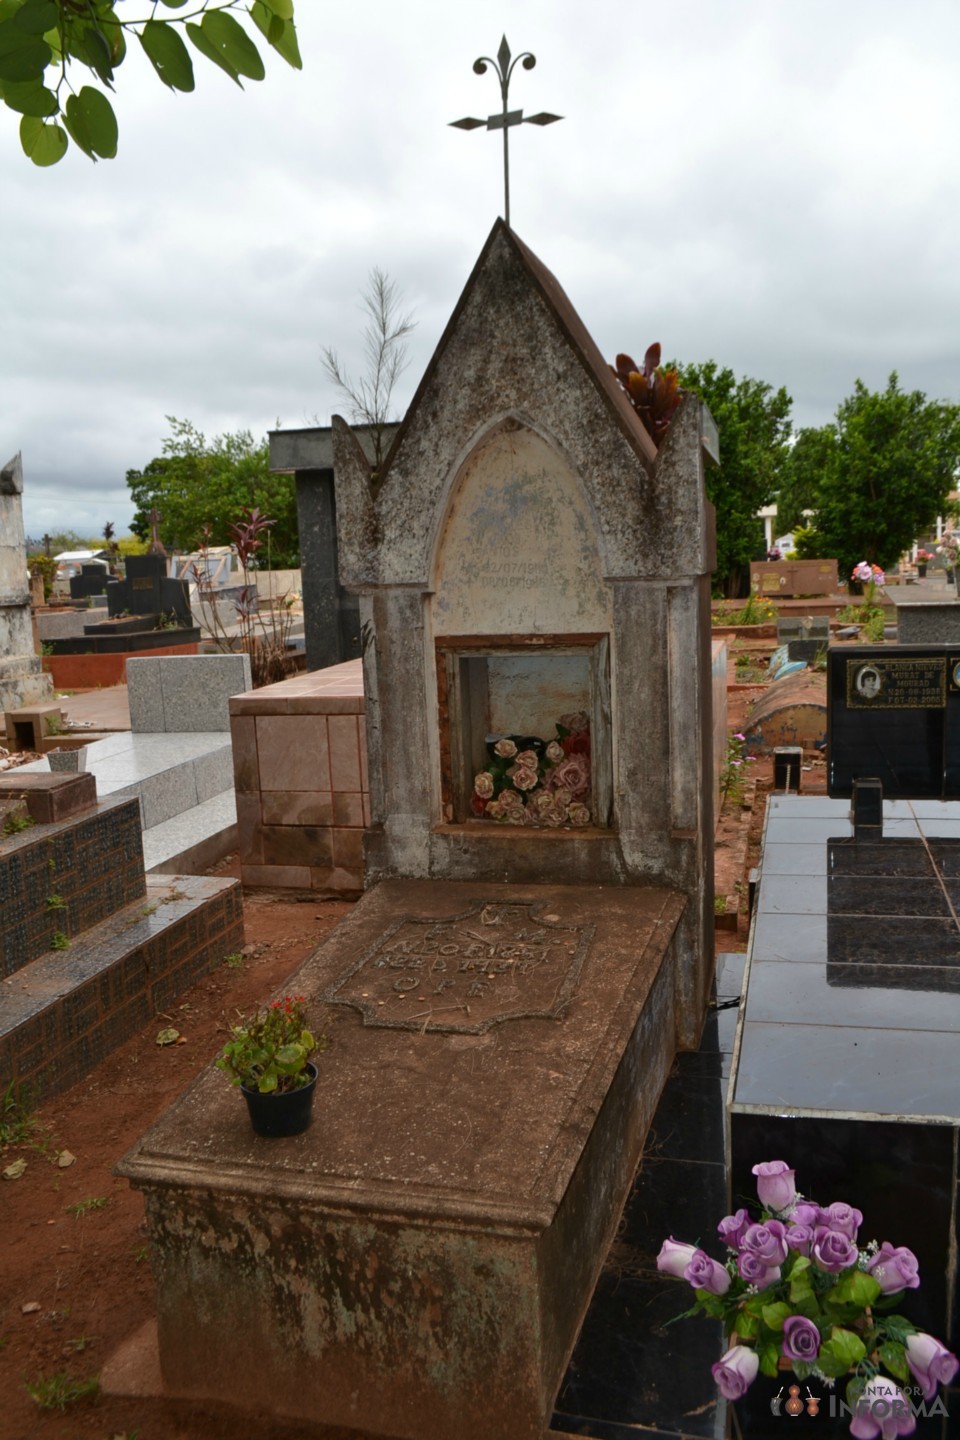 Cemitério Cristo Rei reúne muitas informações históricas de Ponta Porã